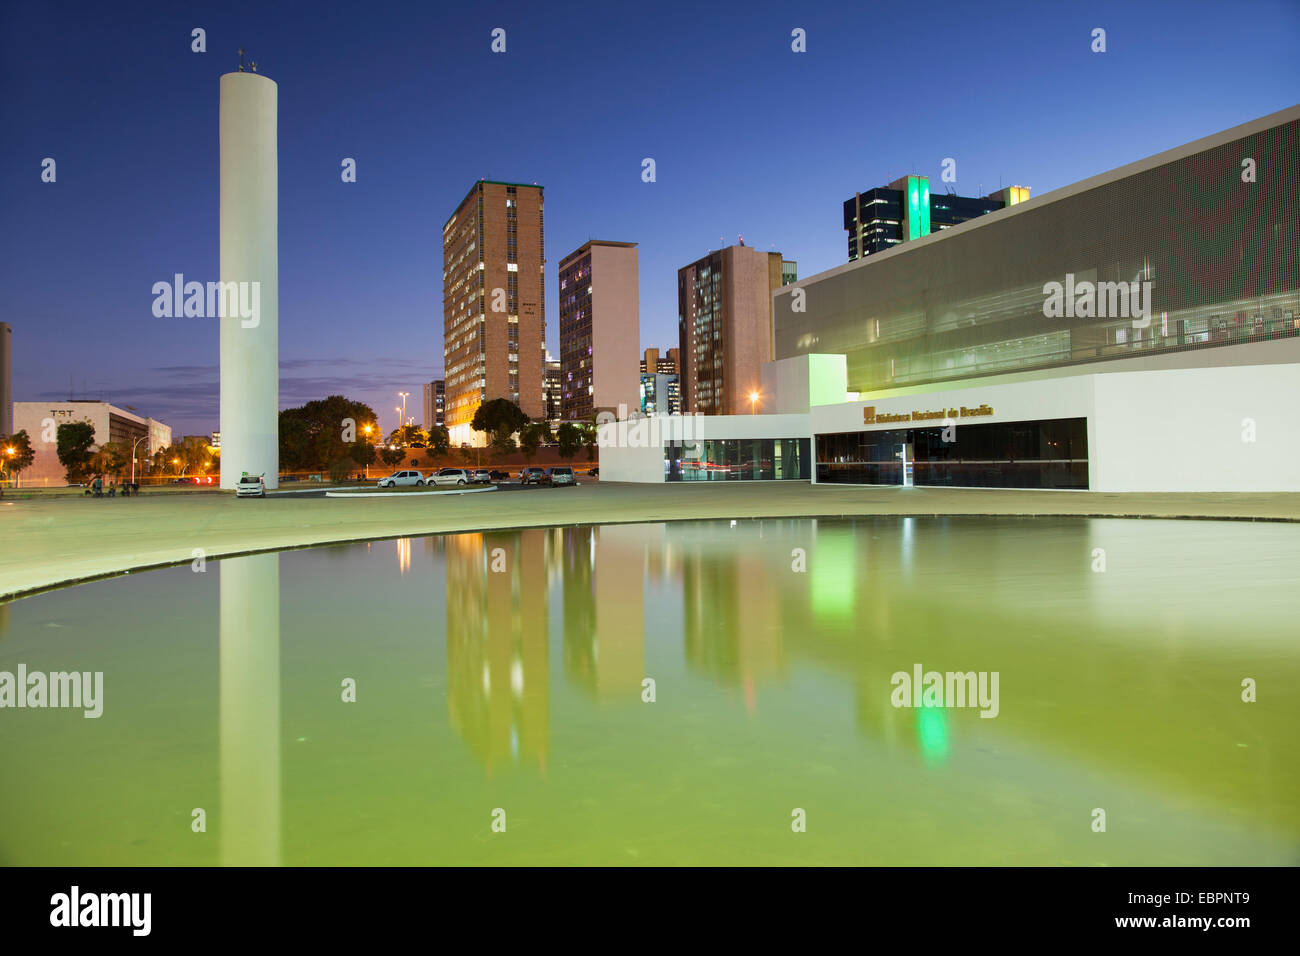 Bibliothèque nationale, des gratte-ciel, crépuscule, UNESCO World Heritage Site, Brasilia, District fédéral, au Brésil, en Amérique du Sud Banque D'Images